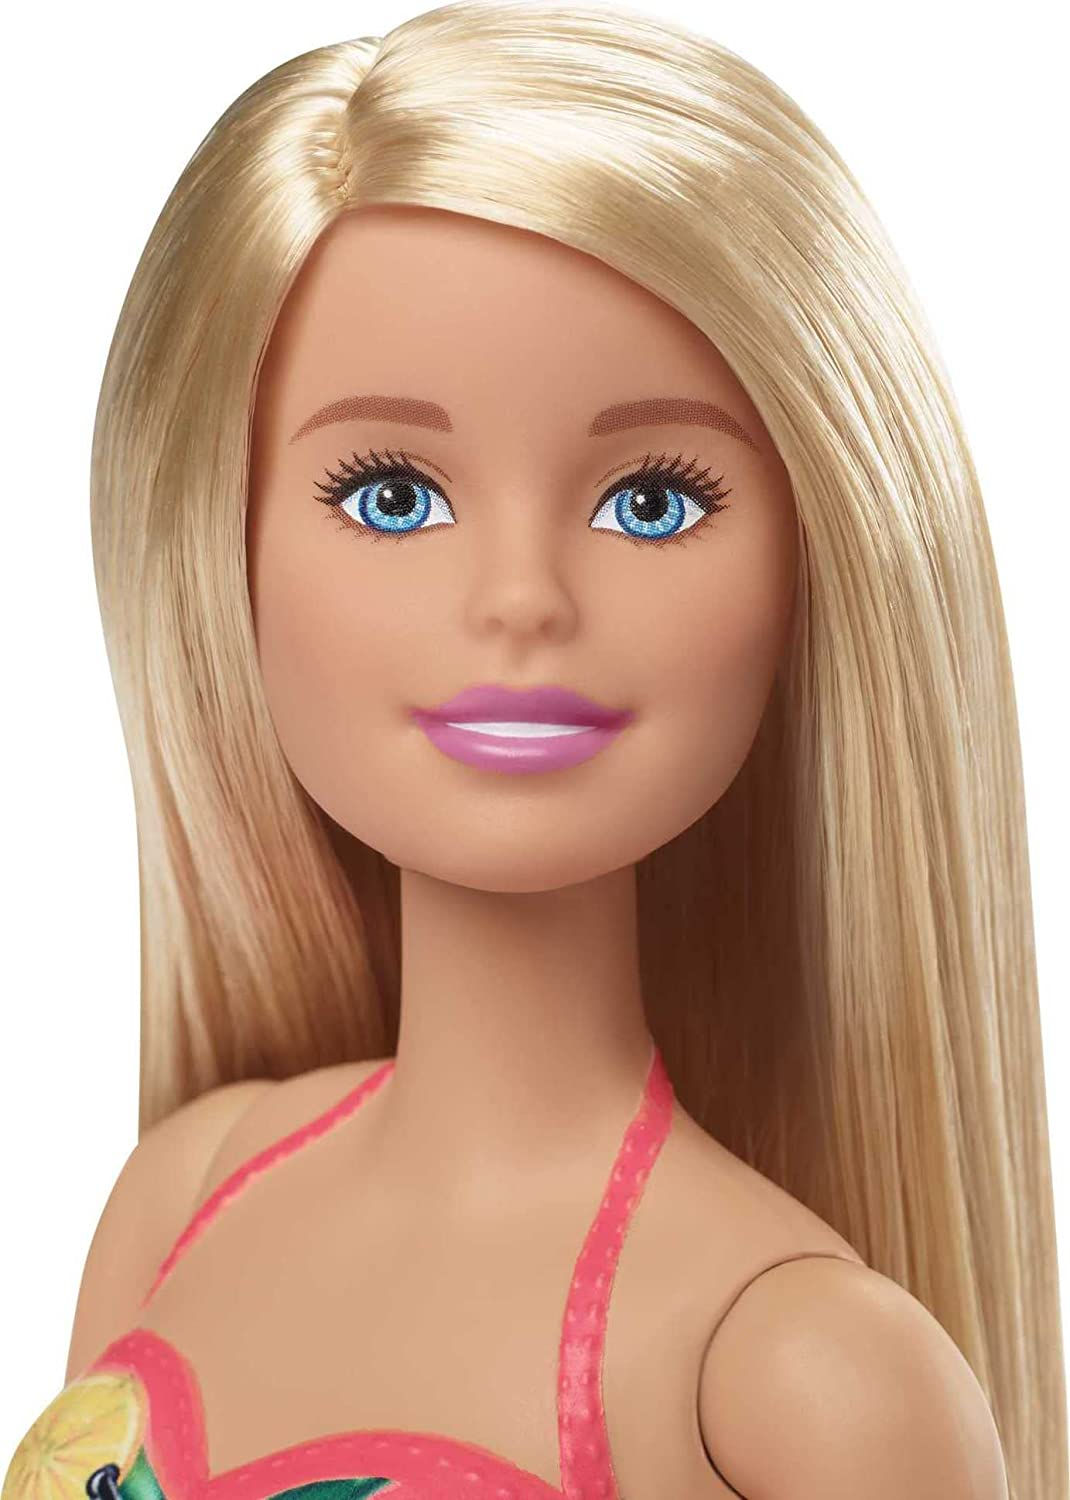 Jogue Barbie grávida gratuitamente sem downloads